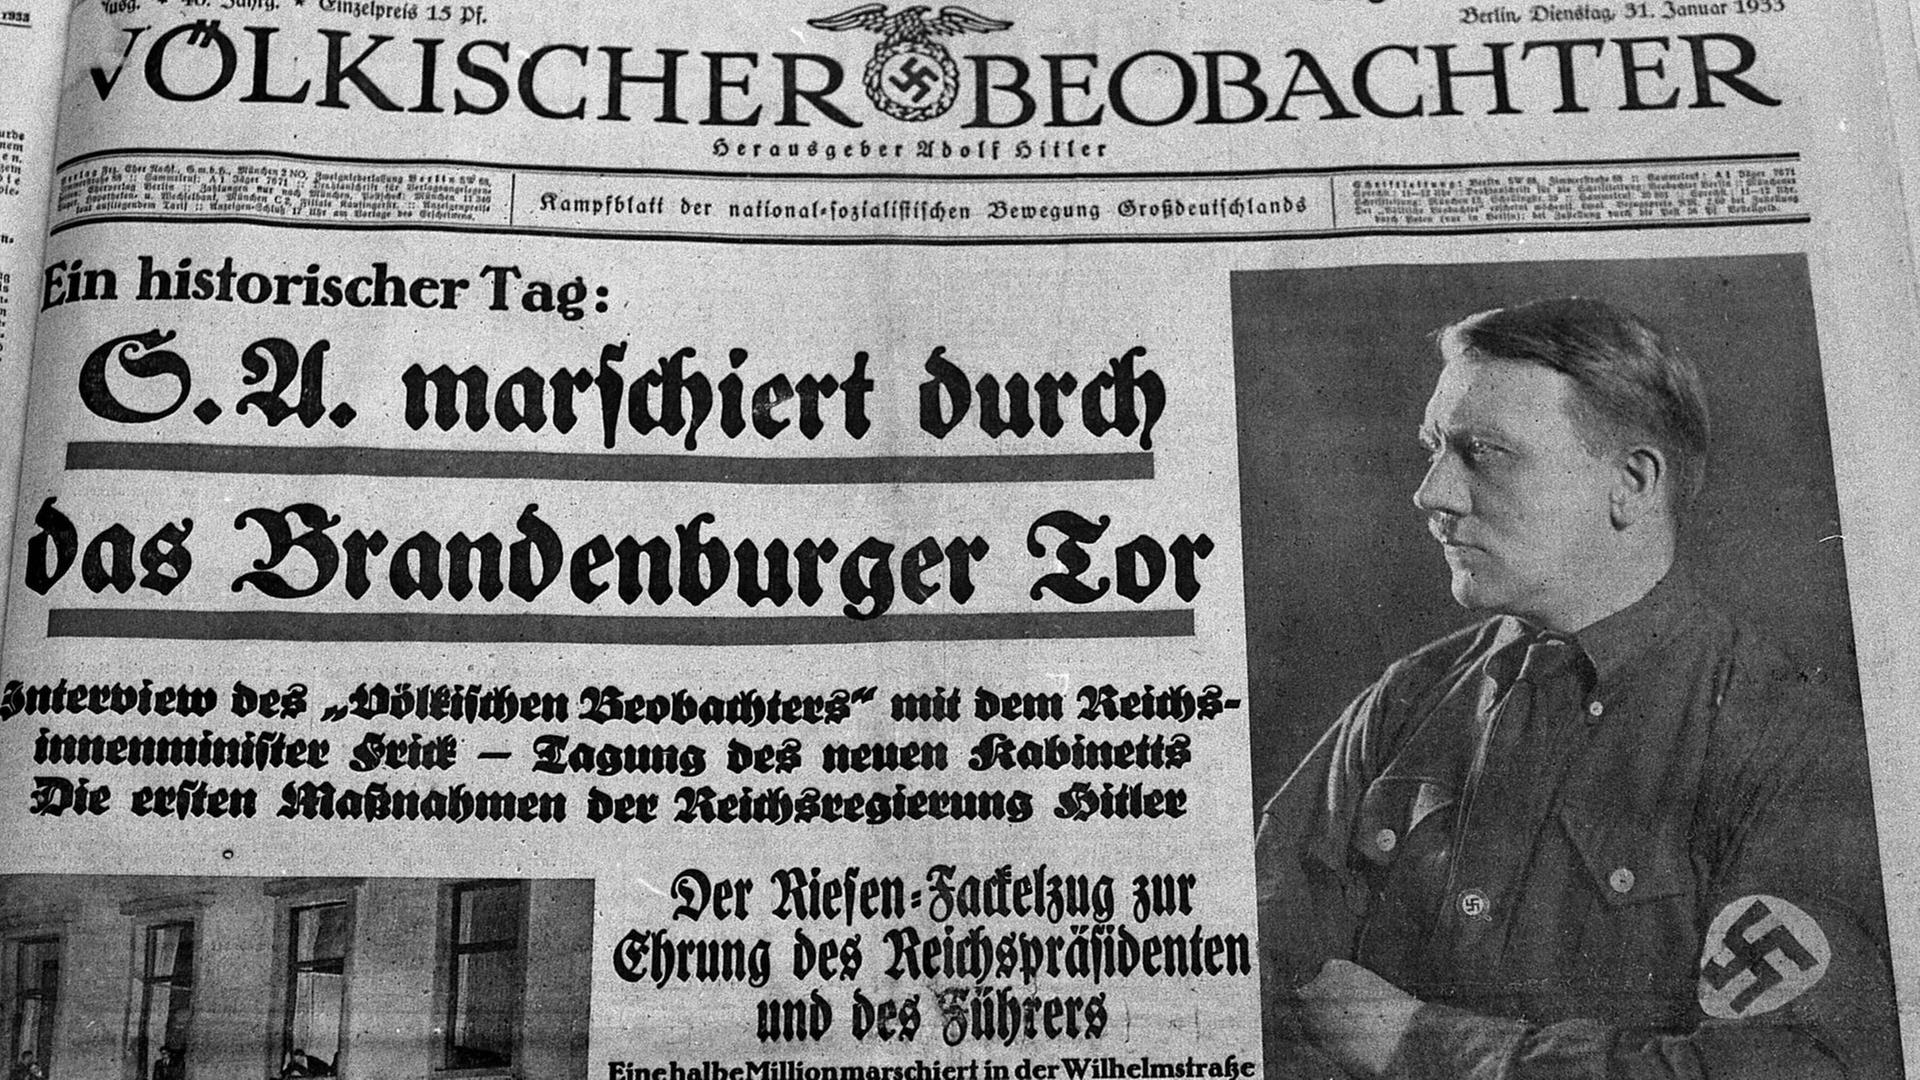 "Der Völkische Beobachter", Zentralorgan der NSDAP titelte in der Ausgabe vom 31. Januar 1933 neben einem Seitenporträt Asdolf Hitlers: "Historischer Tag - SA marschiert durch das Brandenburger Tor